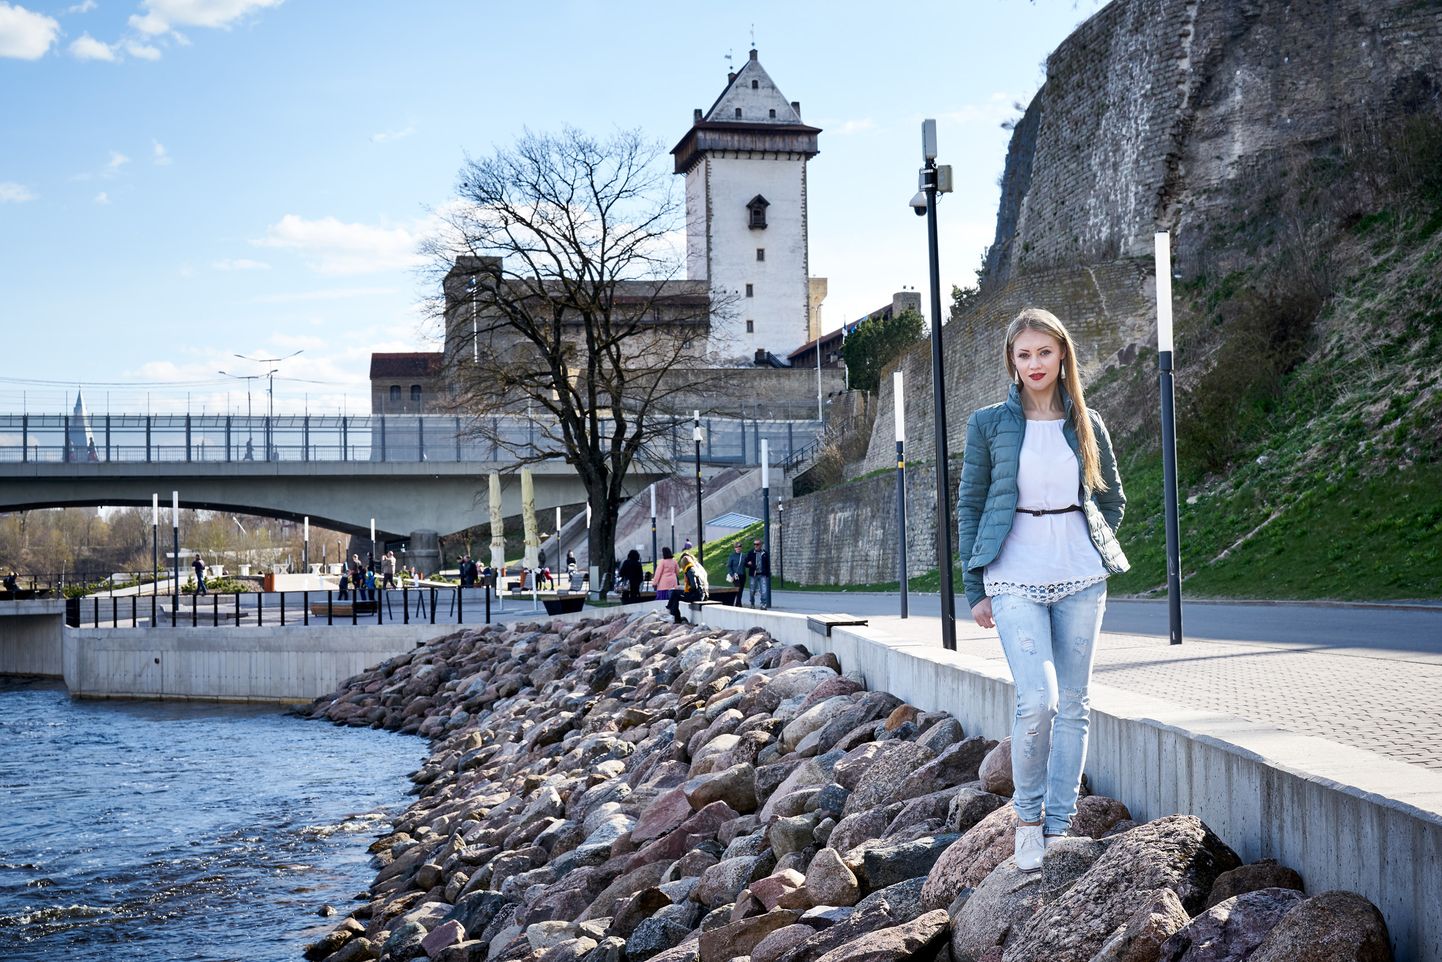 Anželika Štõkalov on veendunud, et Vaba Lava Narva teatrikeskus saab populaarseks nii linlaste kui ka linna külaliste seas.

KAUPO KIKKAS